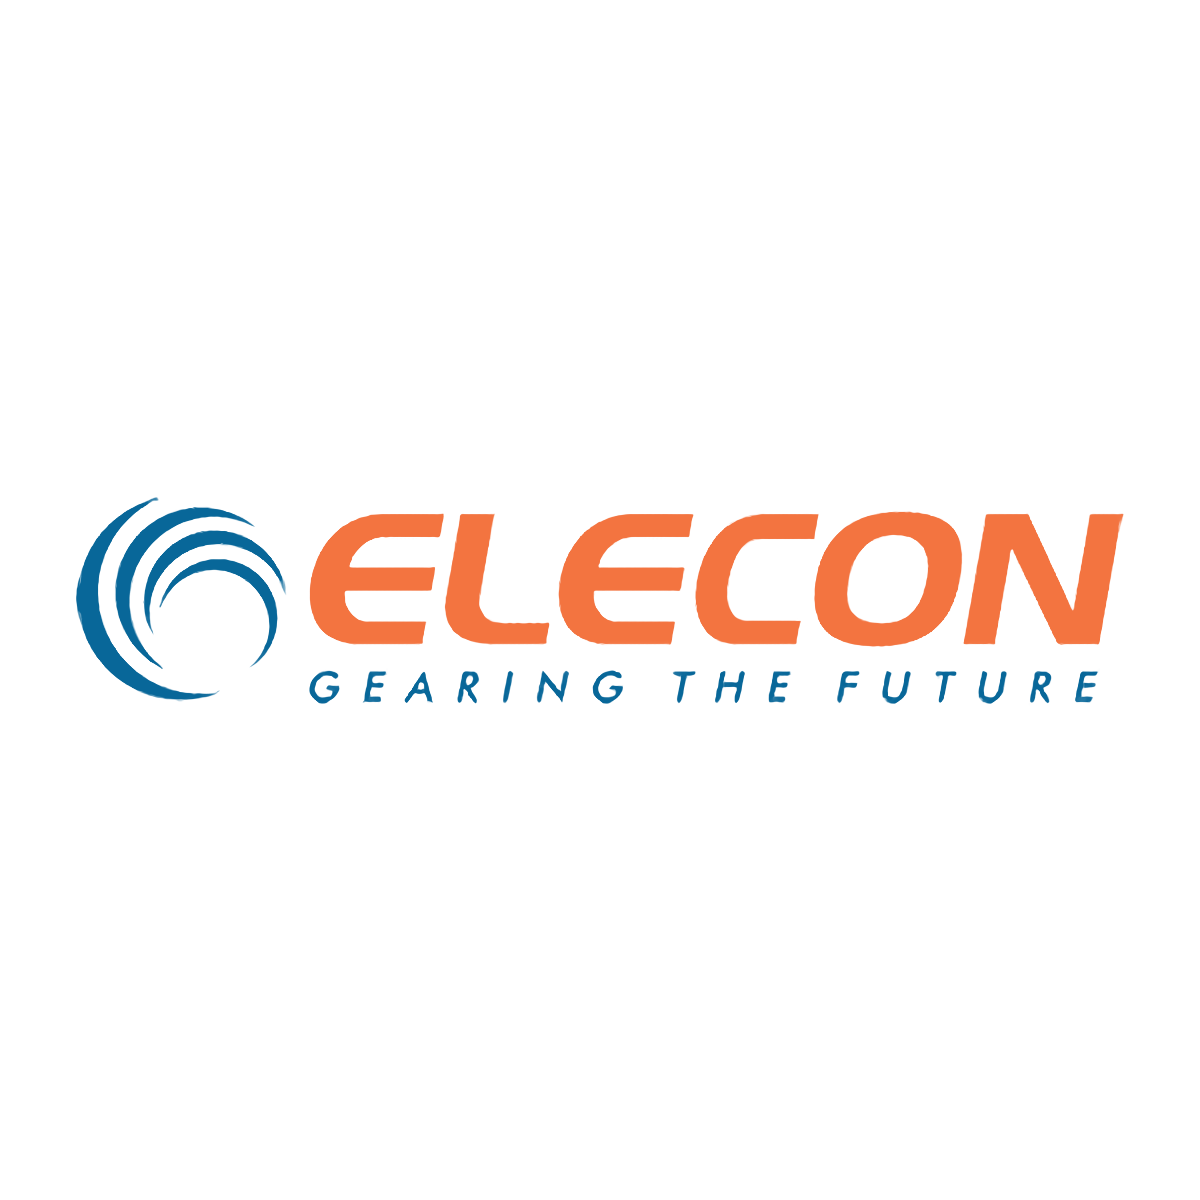 Elecon logo